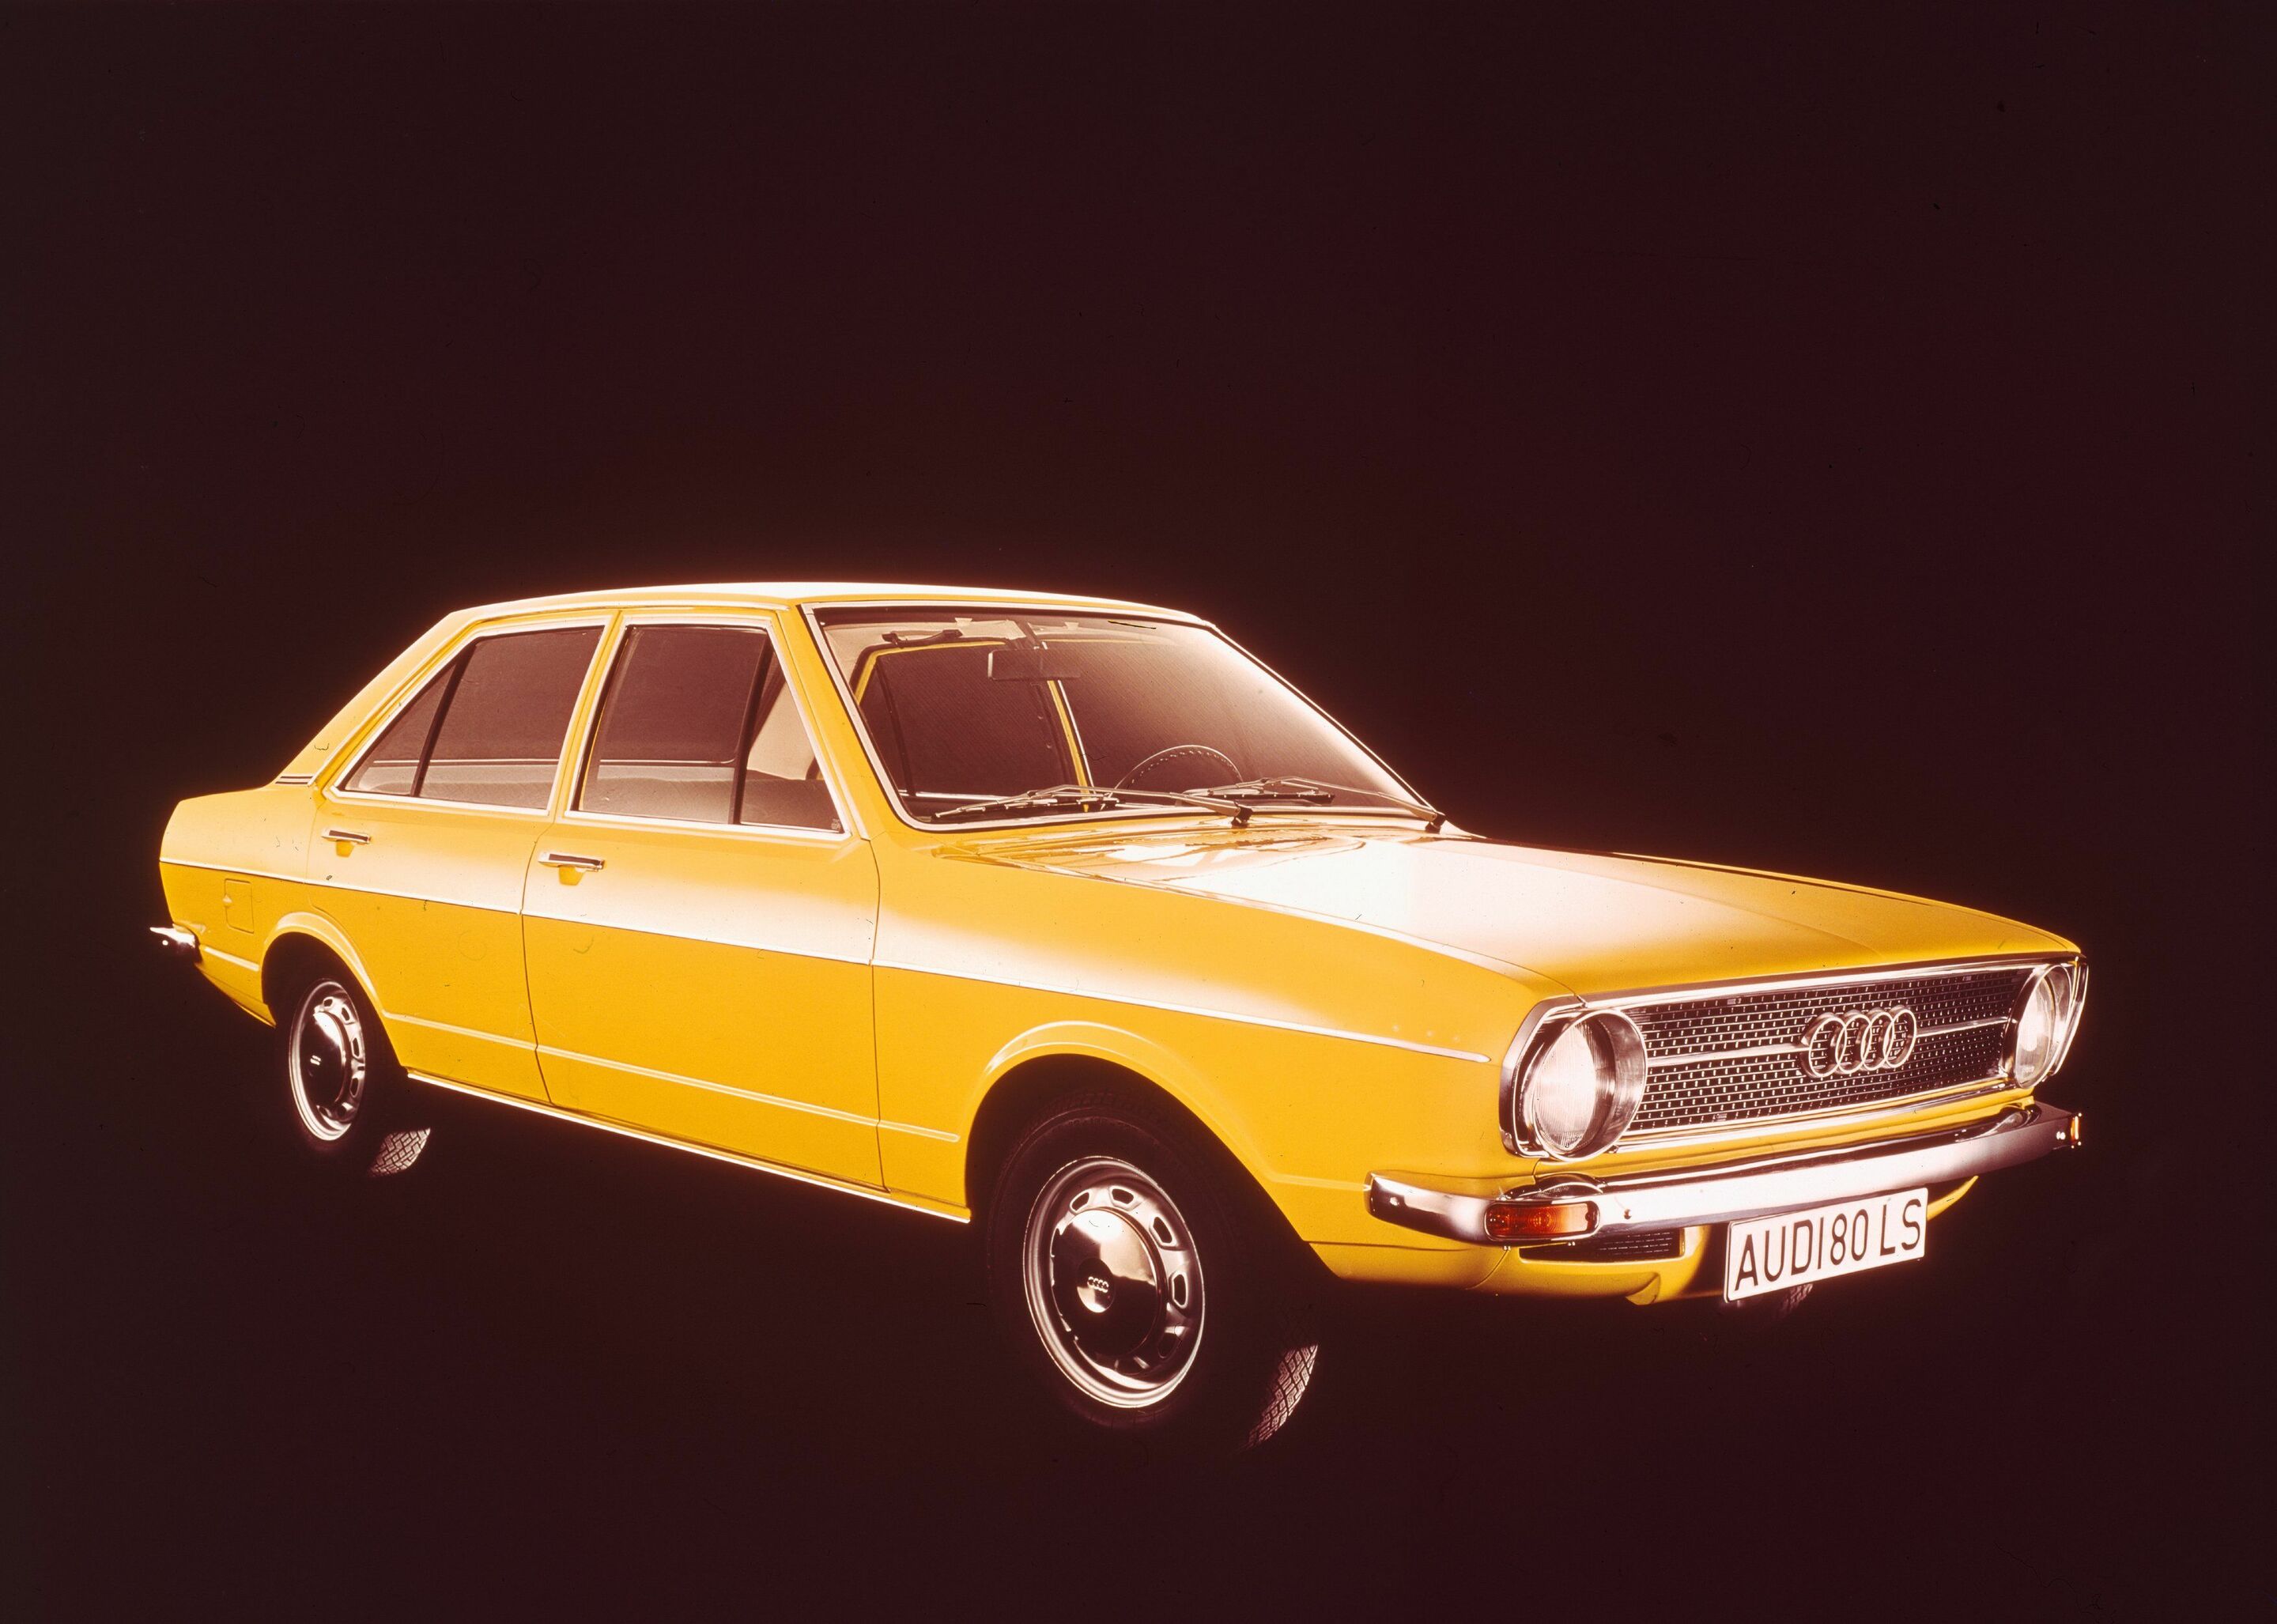 Mit diesem Auto trifft Audi den Zeitgeist: erster Audi 80 vor 50 Jahren vorgestellt